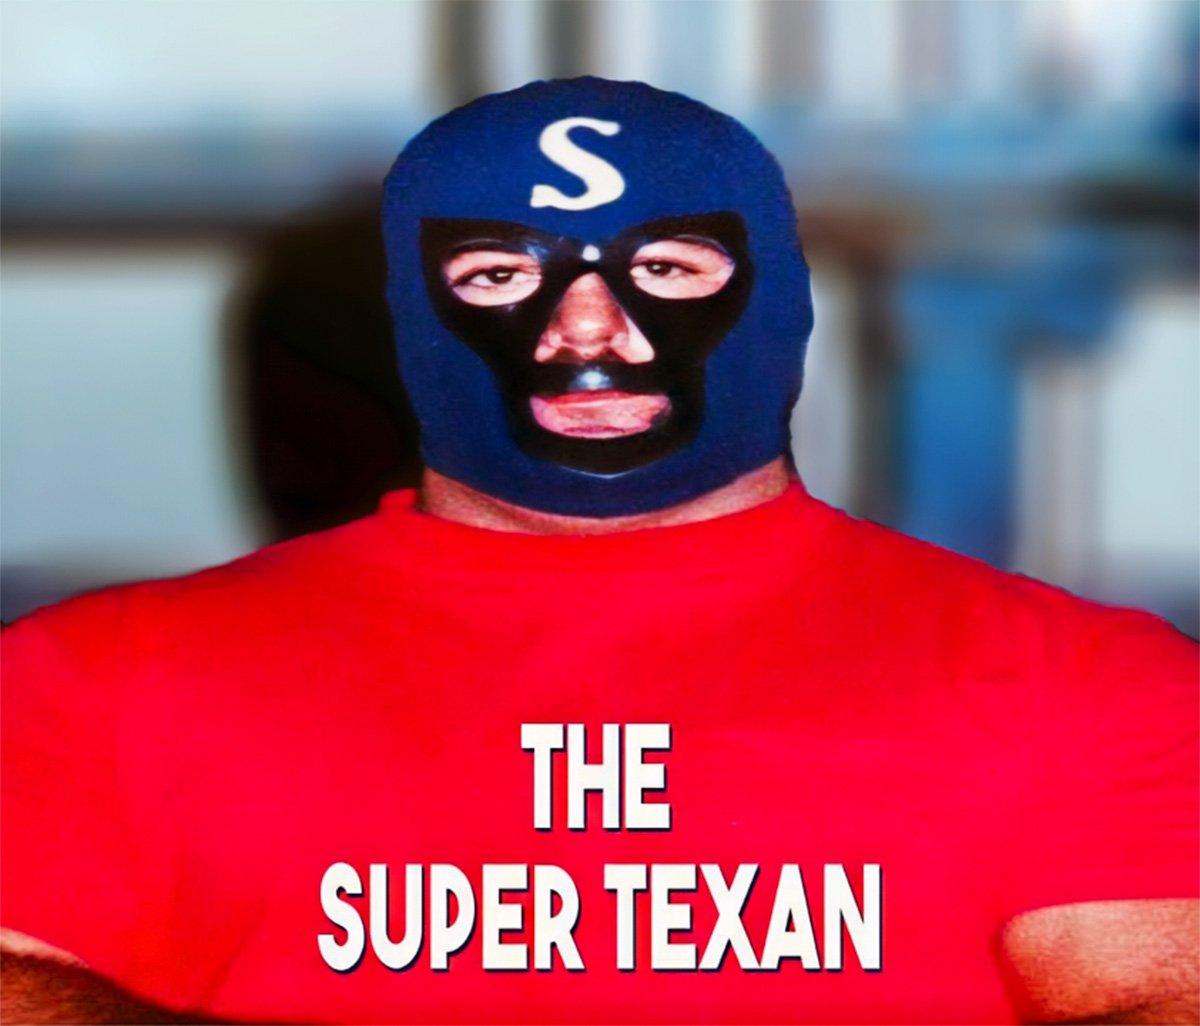 Austin Idol as "The Super Texan."